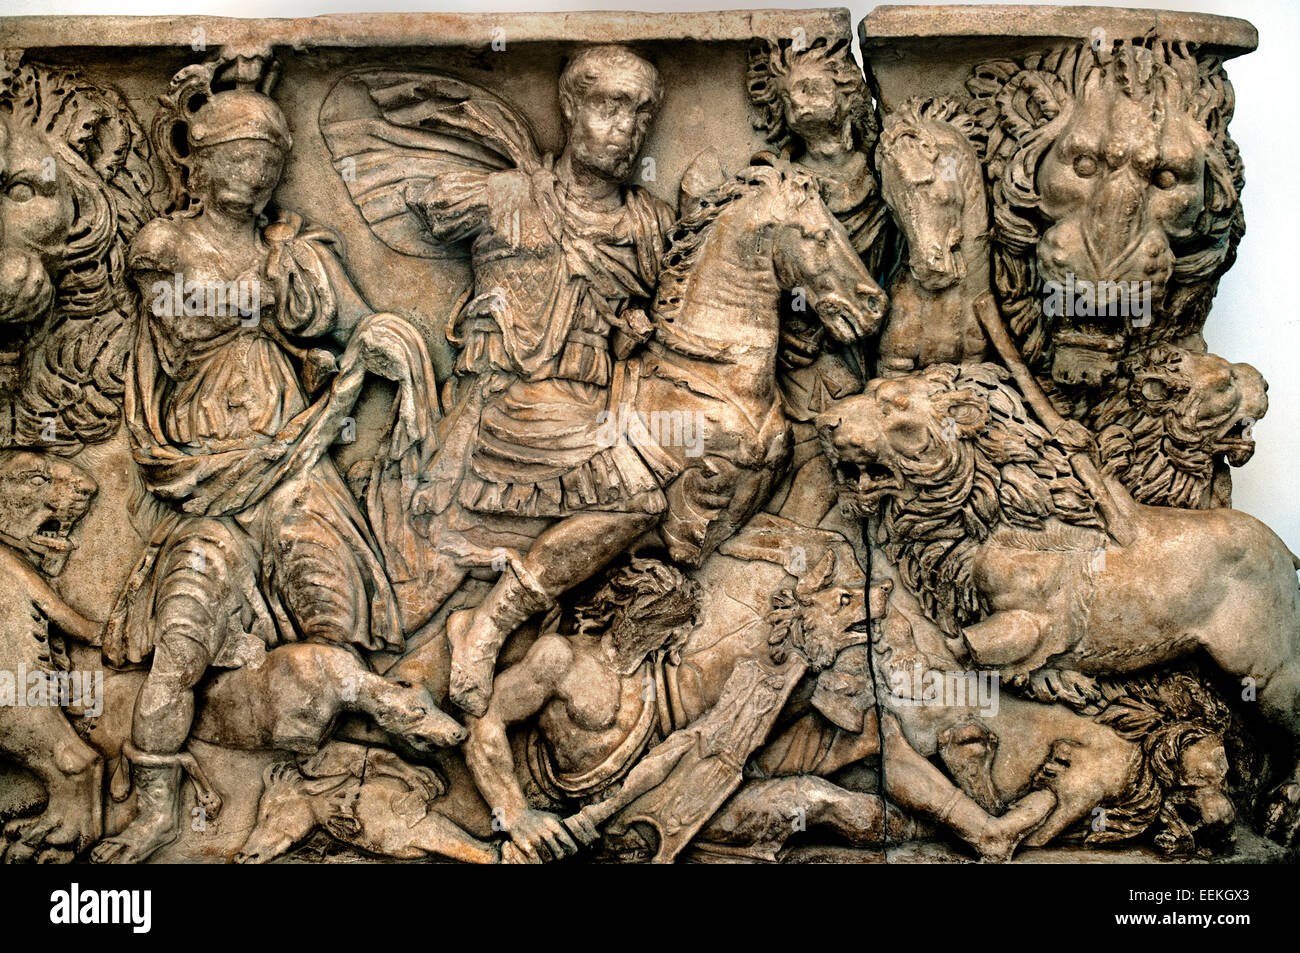 Sarcophage romain représentant une scène de chasse avec les lions III siècle Musée du Capitole de Rome Romain Italie Italien Banque D'Images